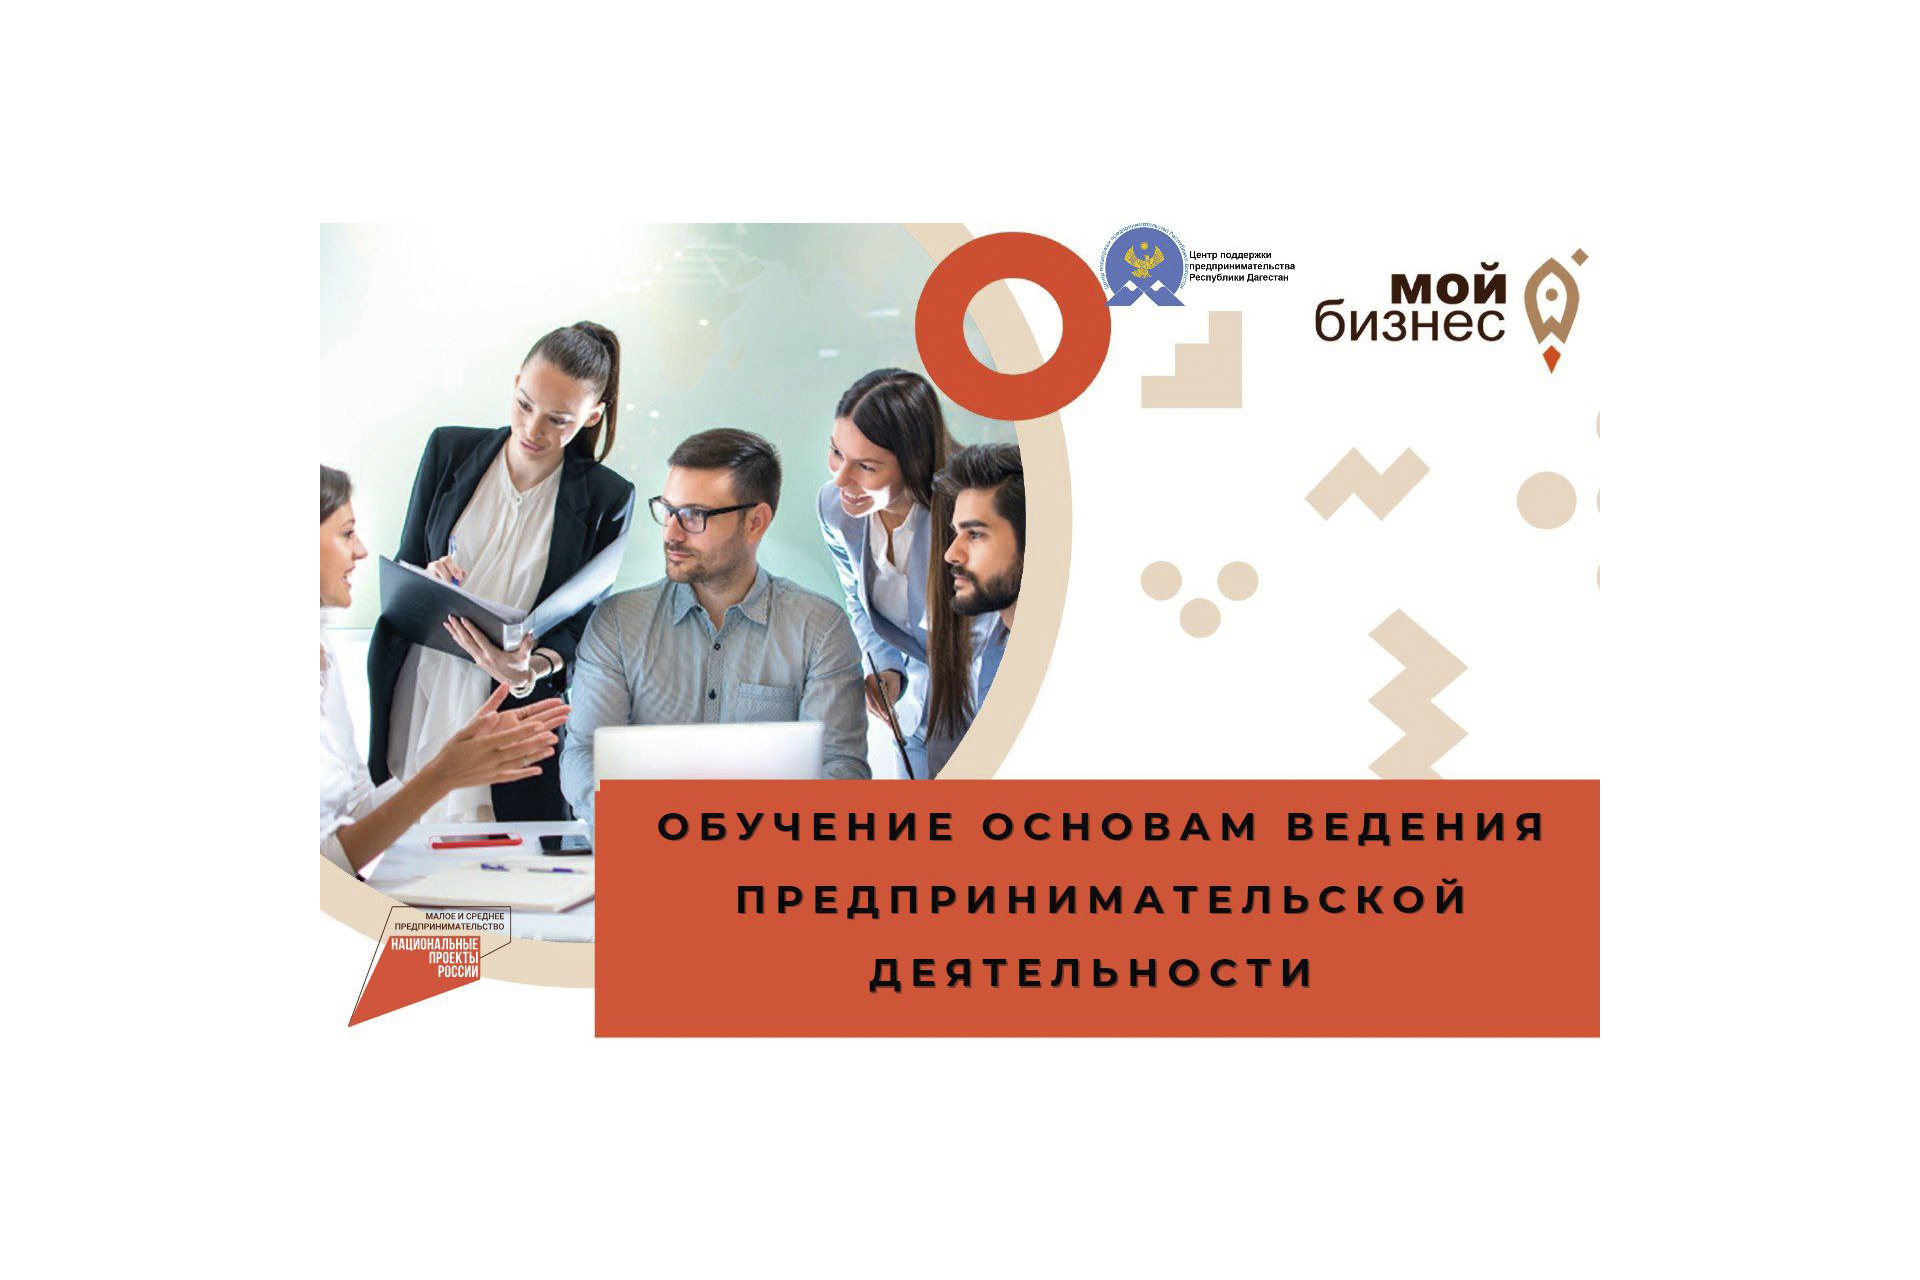 Центр поддержки предпринимательства Республики Дагестан приглашает Вас на обучение по основам ведения предпринимательской деятельности.